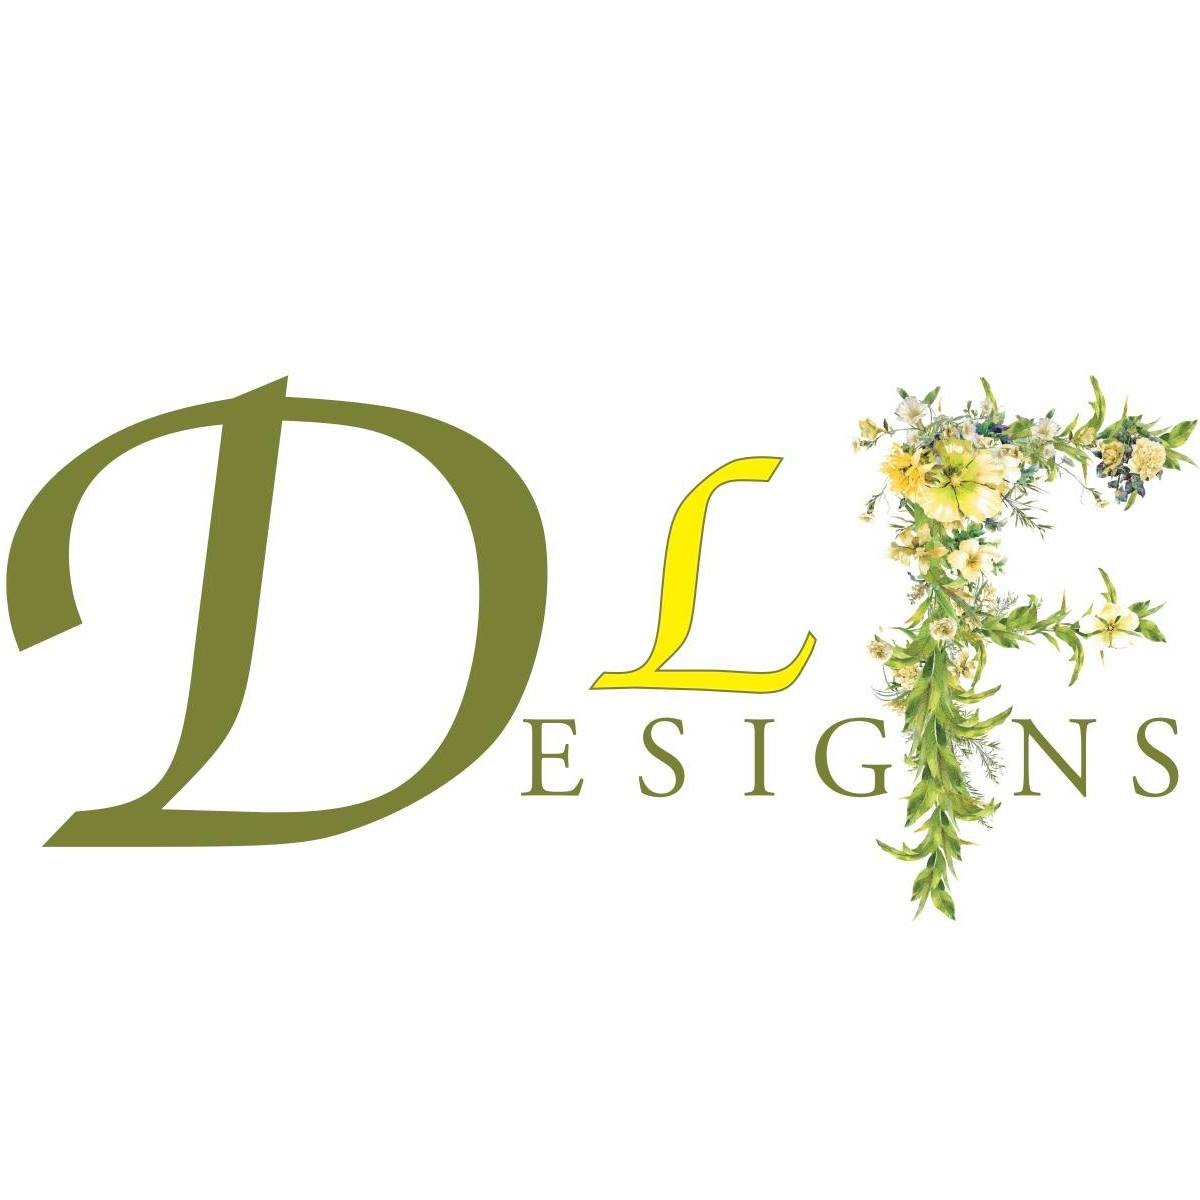 DLF Designs